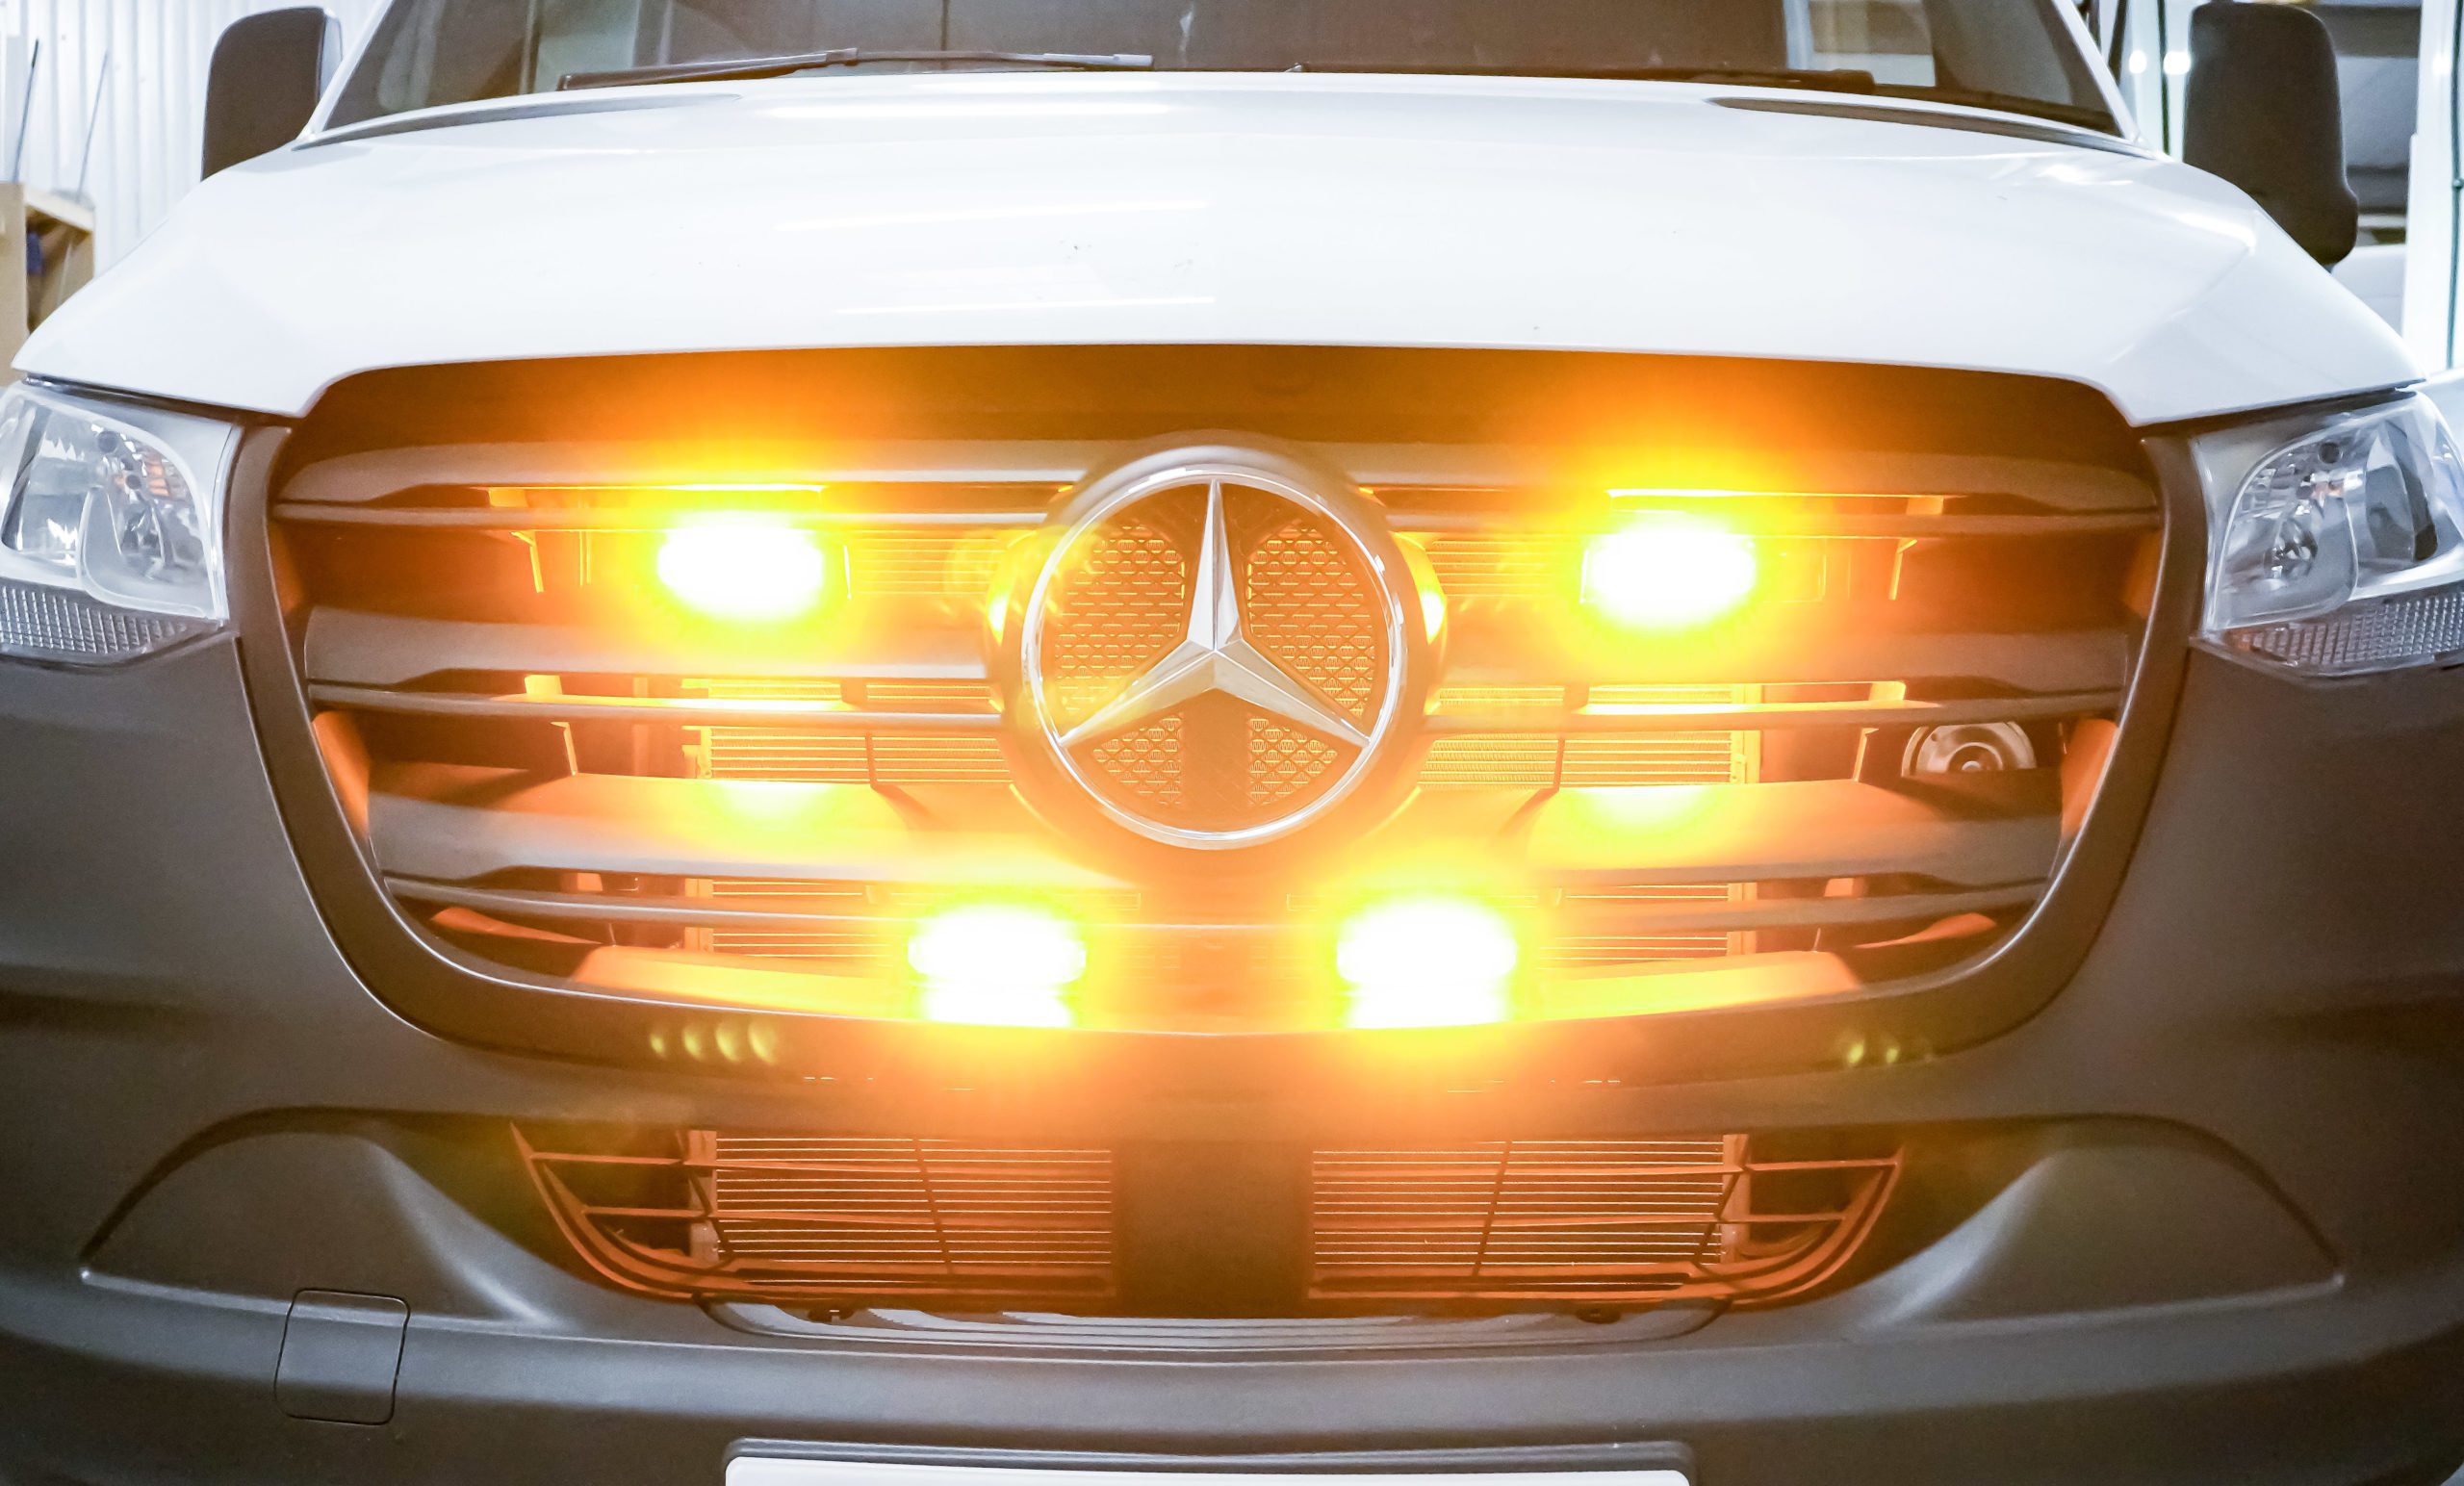 Vehicle Safety Lighting - Hazard warning lights - Mercedes Sprinter